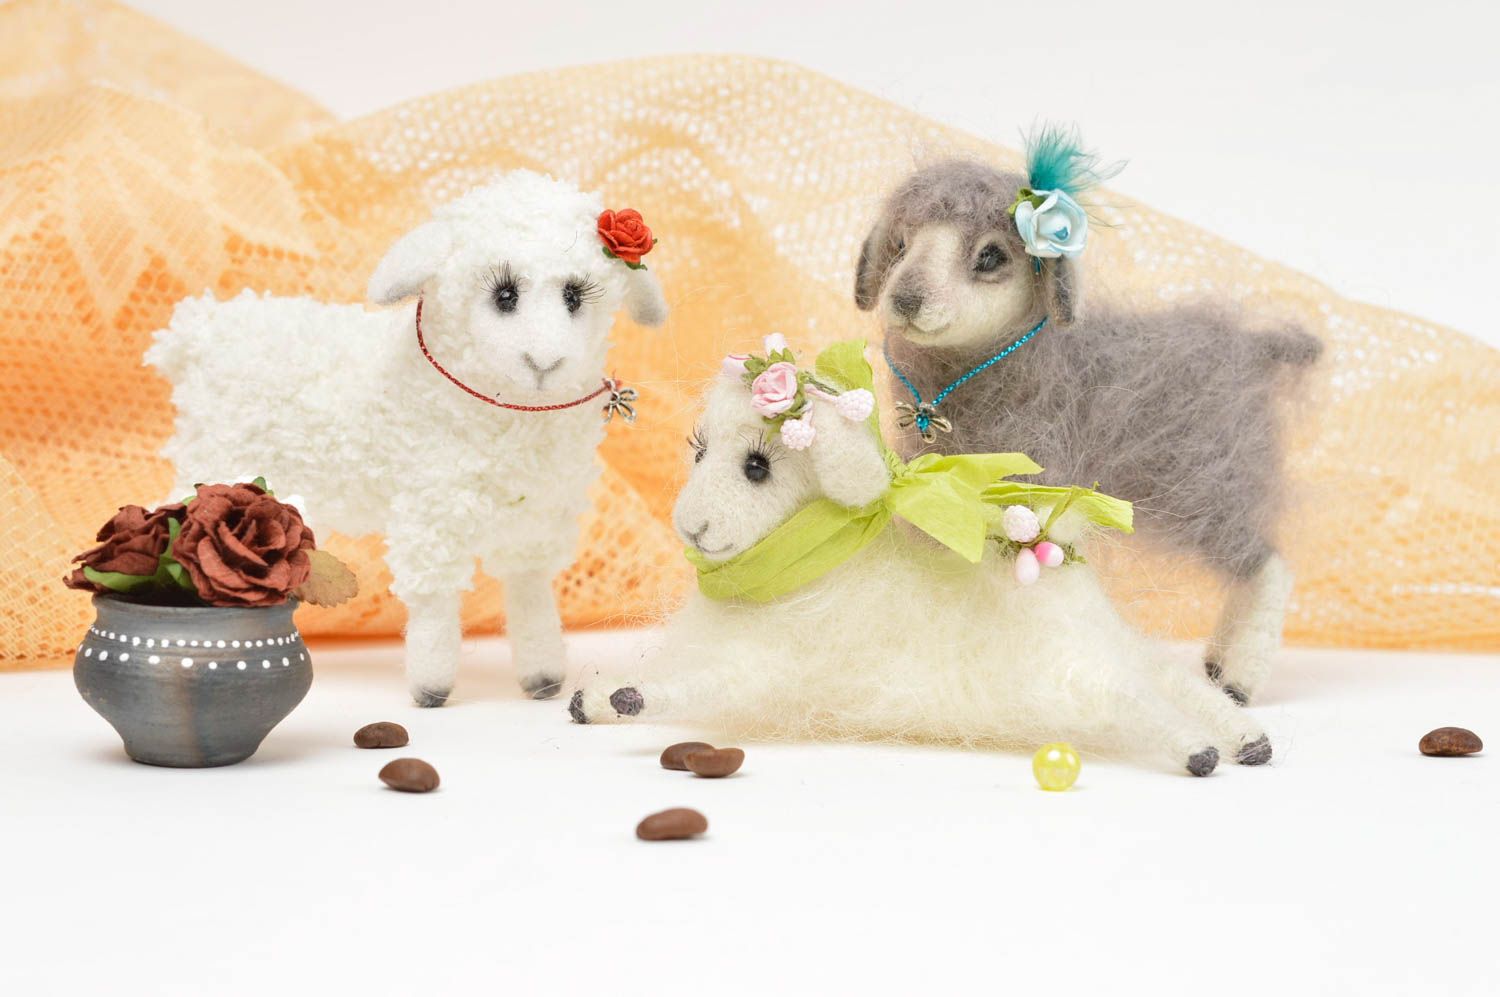 Игрушки мягкие три овцы игрушки ручной работы детские игрушки симпатичные фото 1